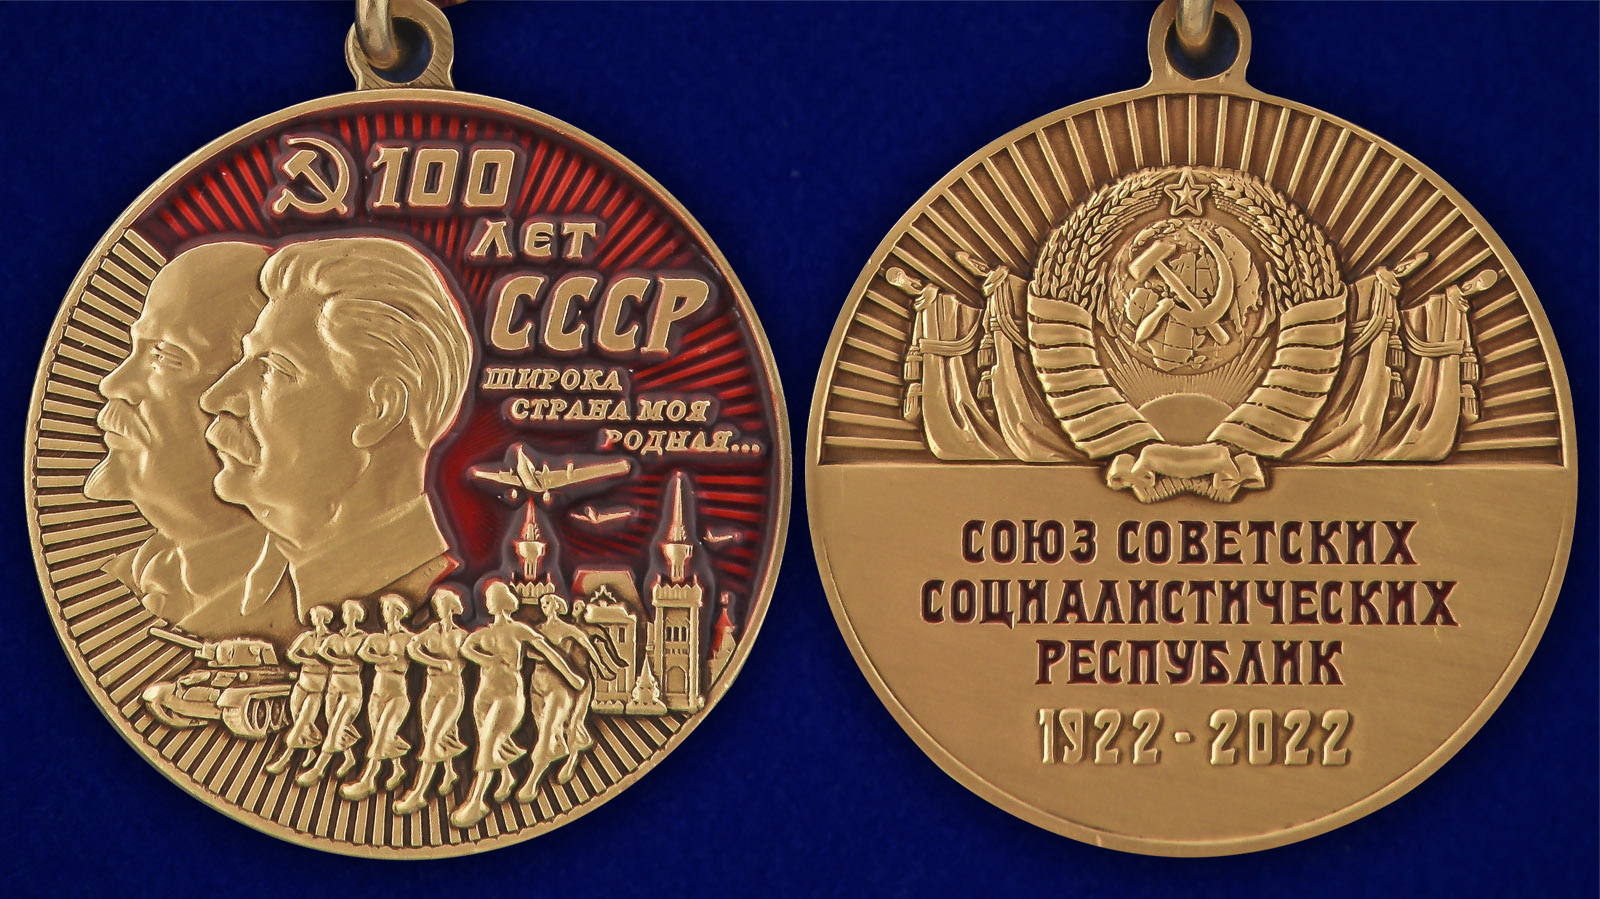 Описание медали "100 лет СССР" - аверс и реверс 